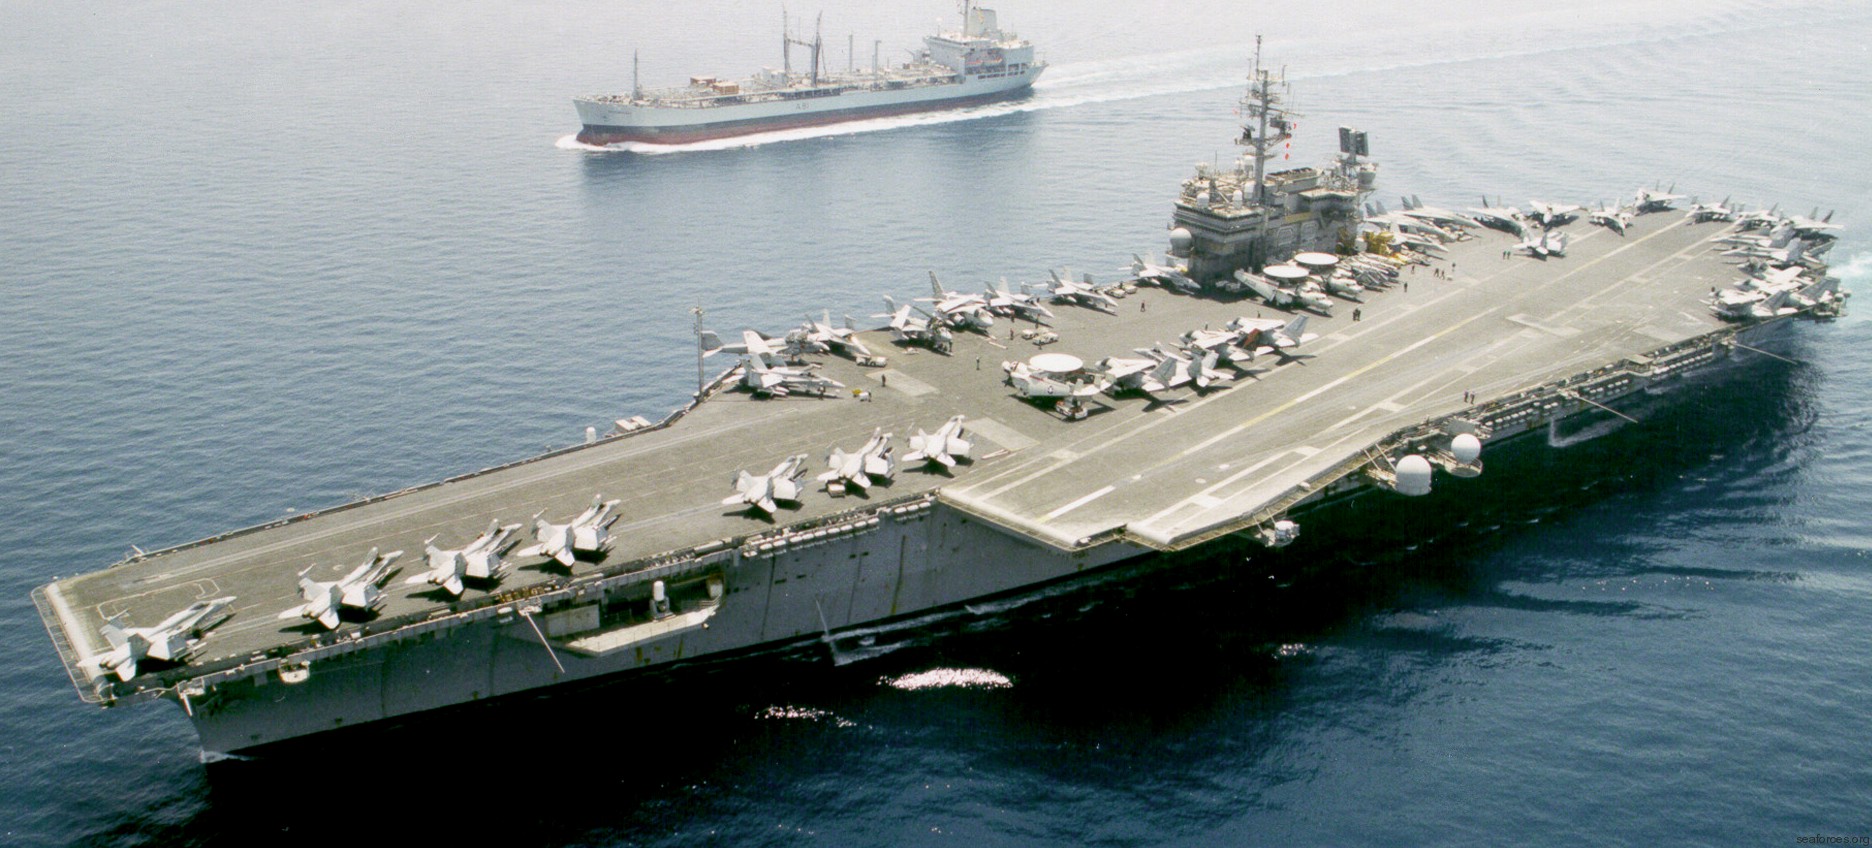 cv-63 uss kitty hawk aircraft carrier air wing cvw-5 us navy 216 persian gulf